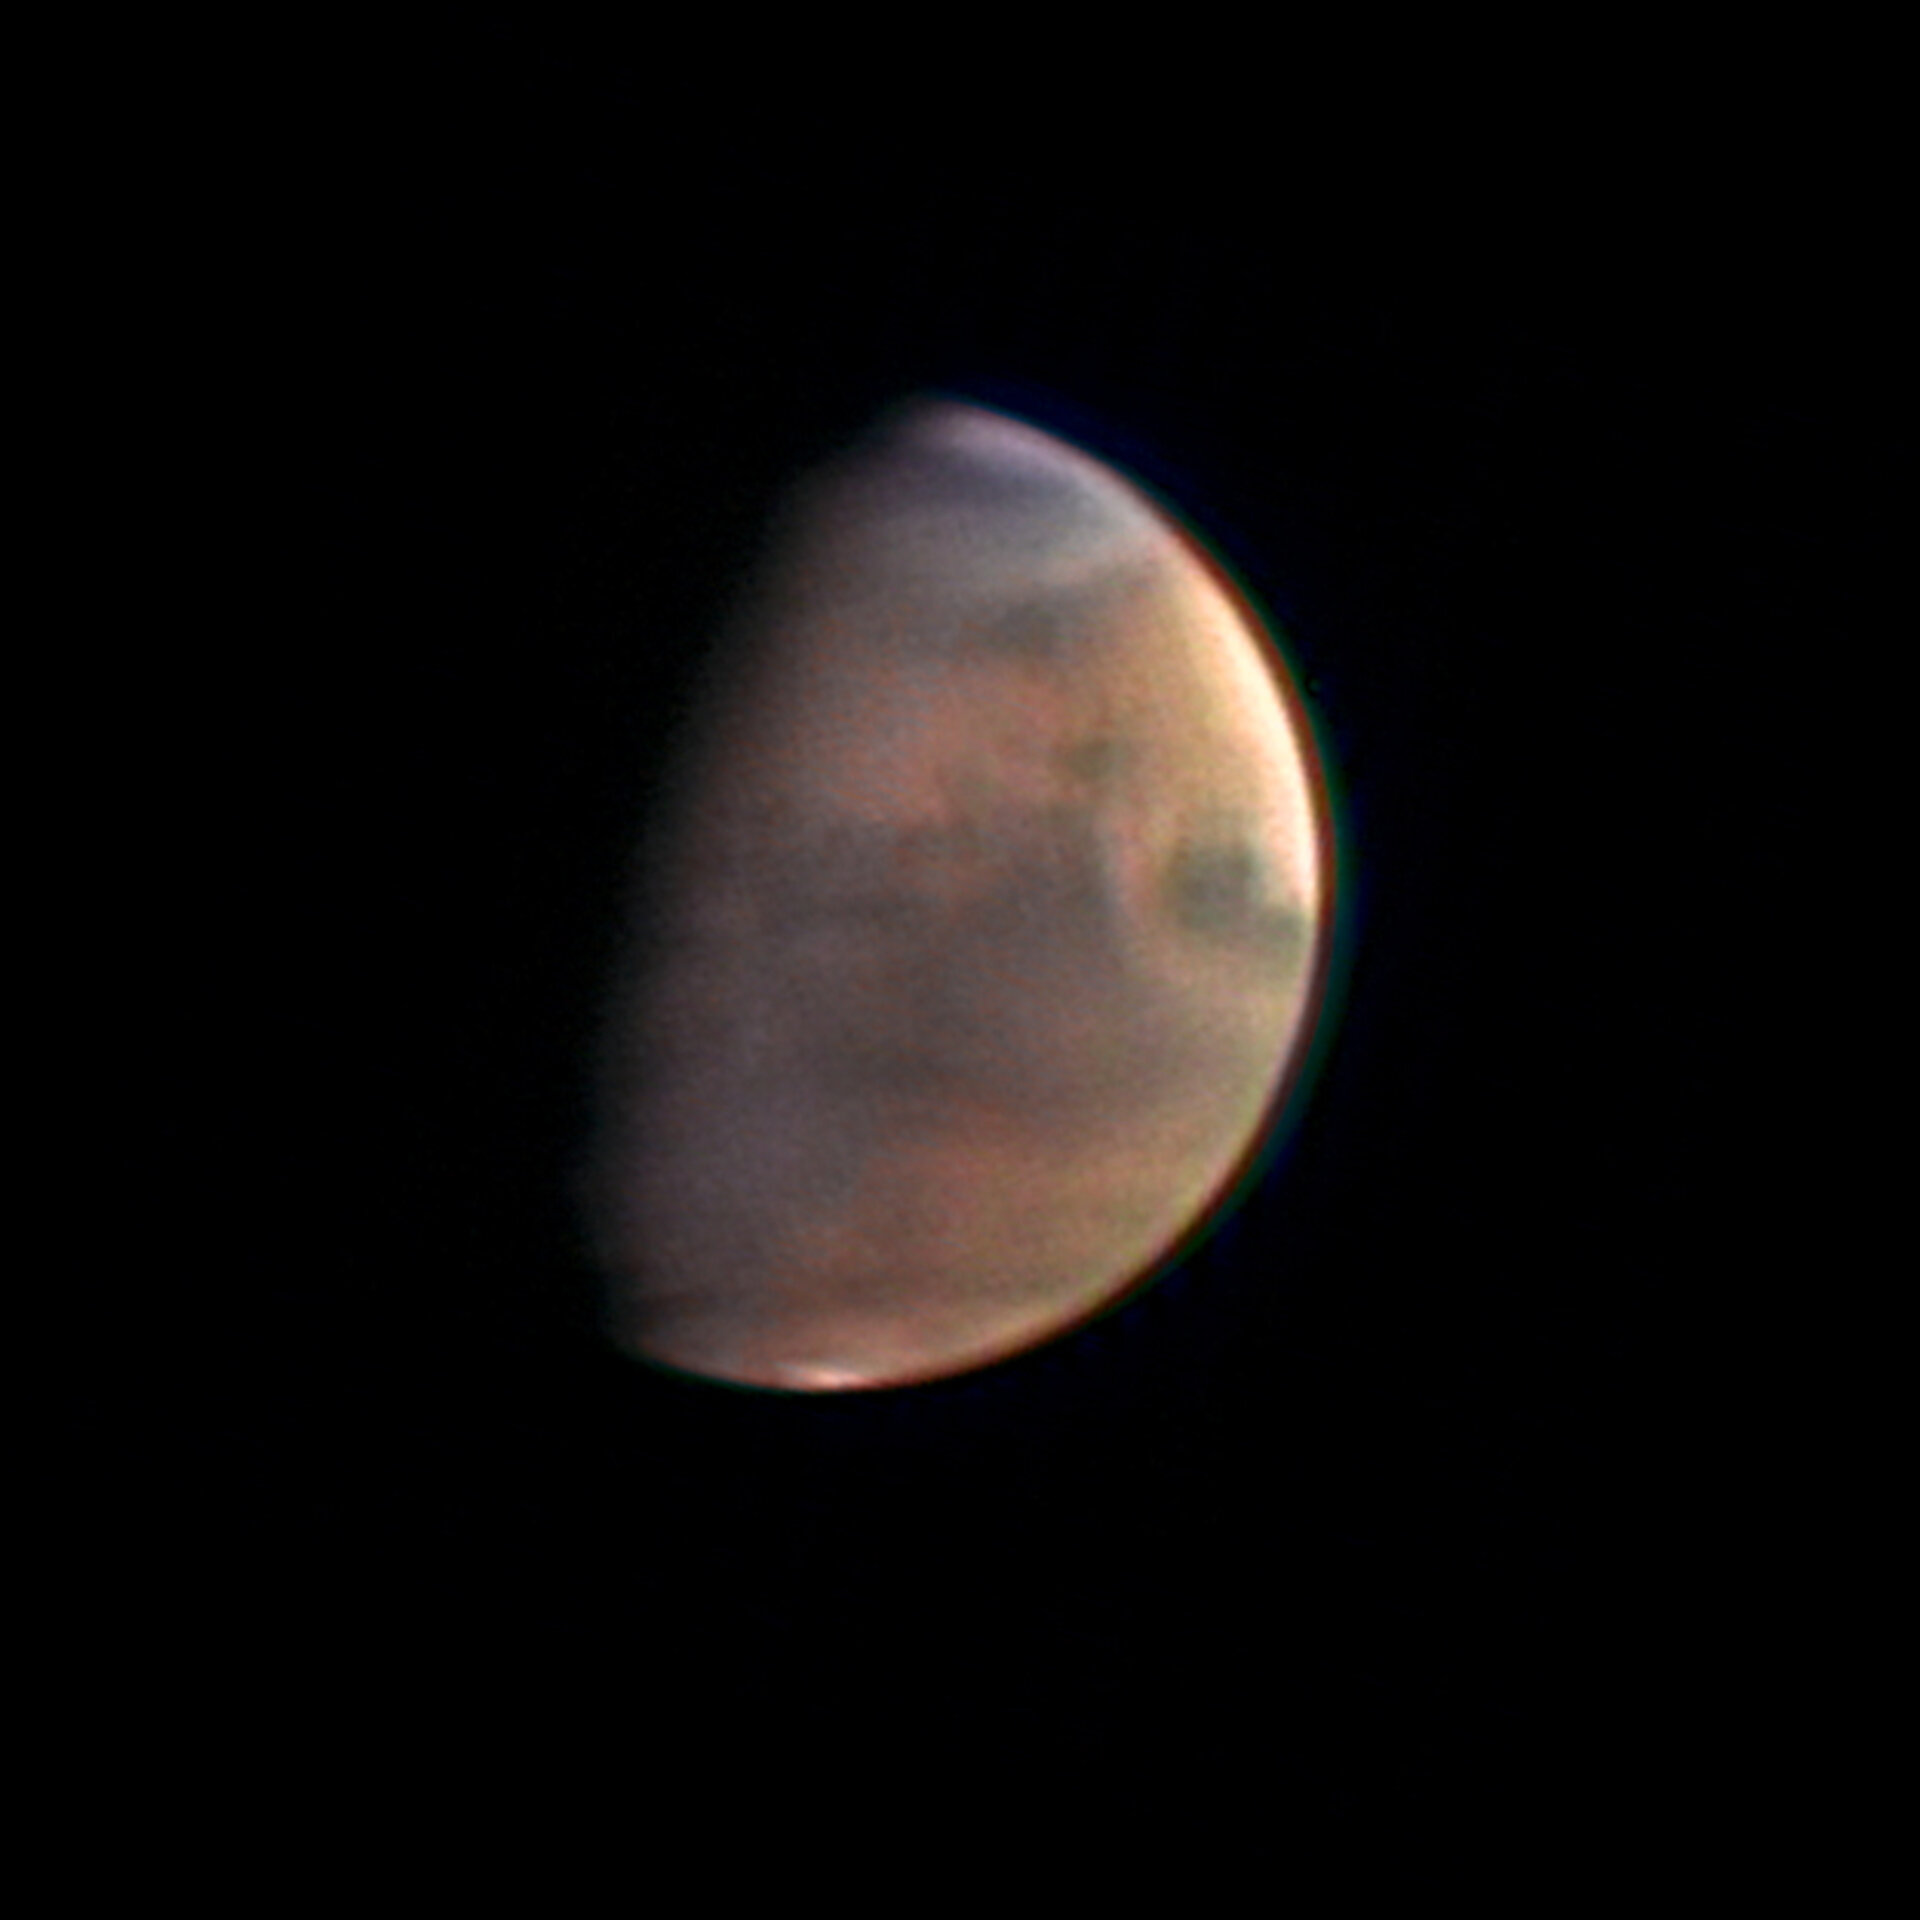 Mars 5,5 miljoonan kilometrin päästä